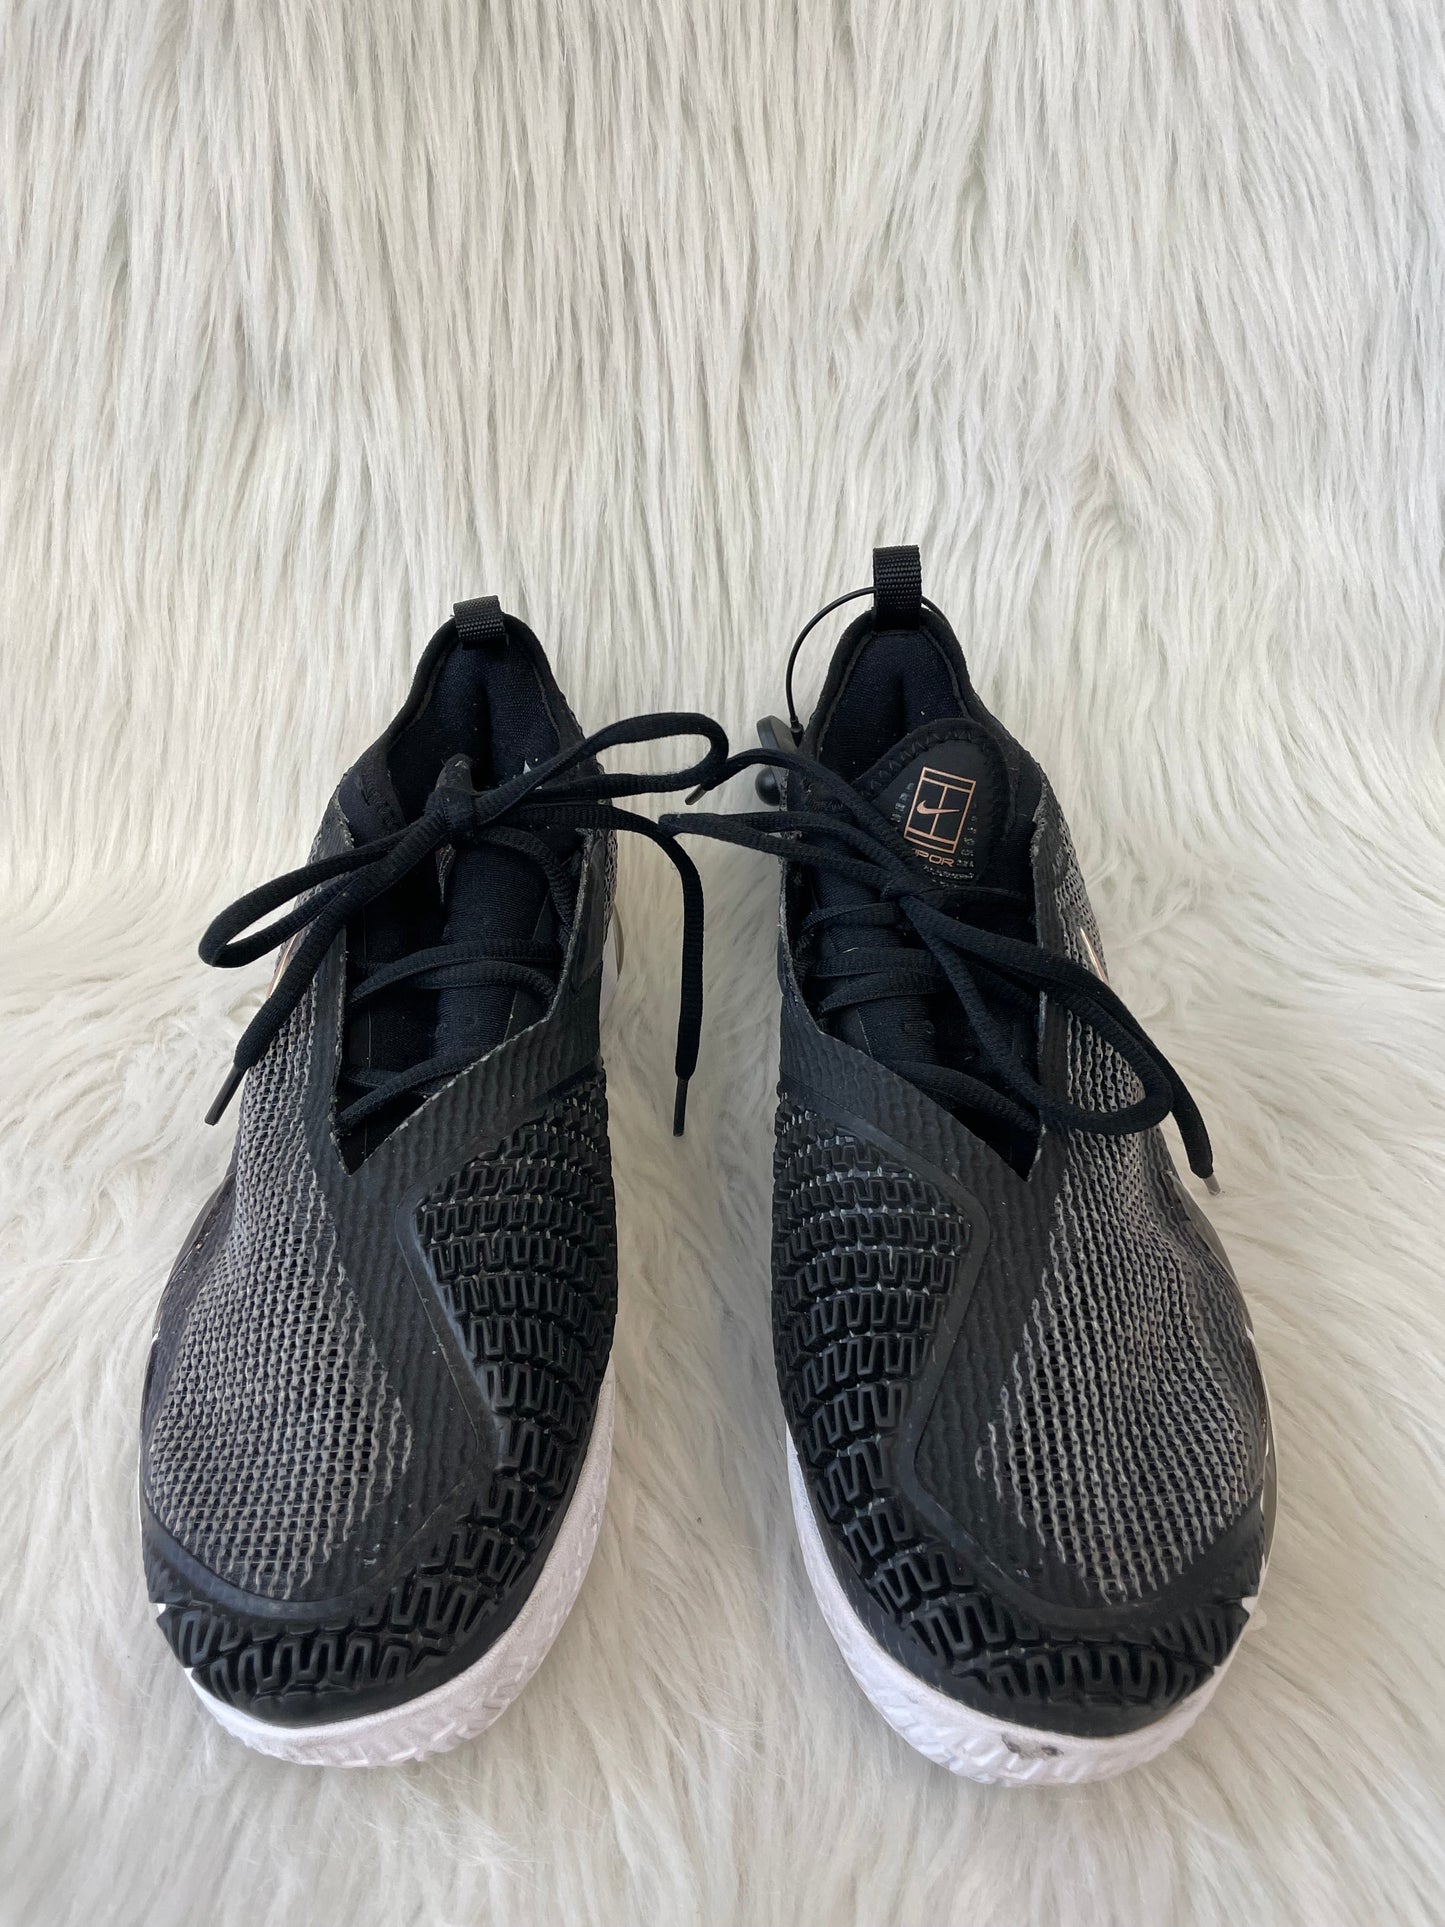 Black Shoes Athletic Nike, Size 11